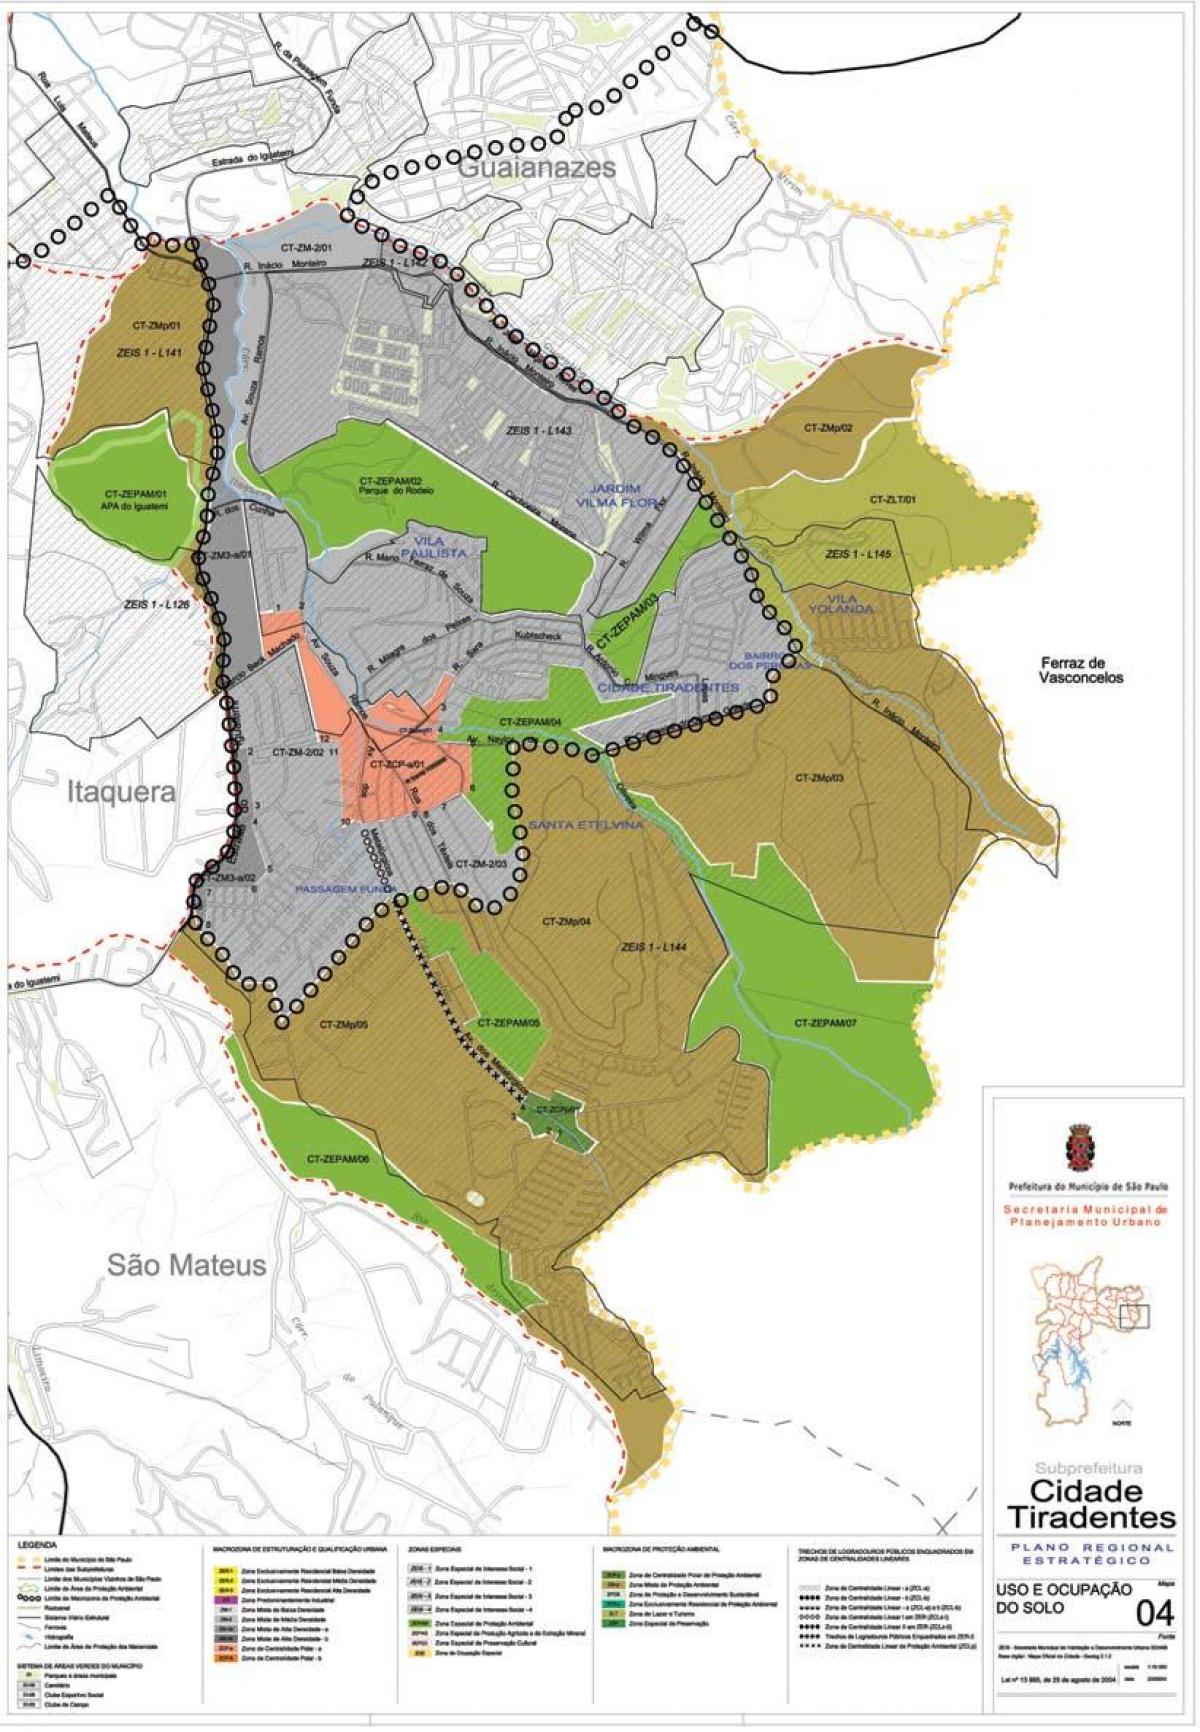 แผนที่ของ Cidade Tiradentes São Paulo-มีอาชีพของที่ดิน